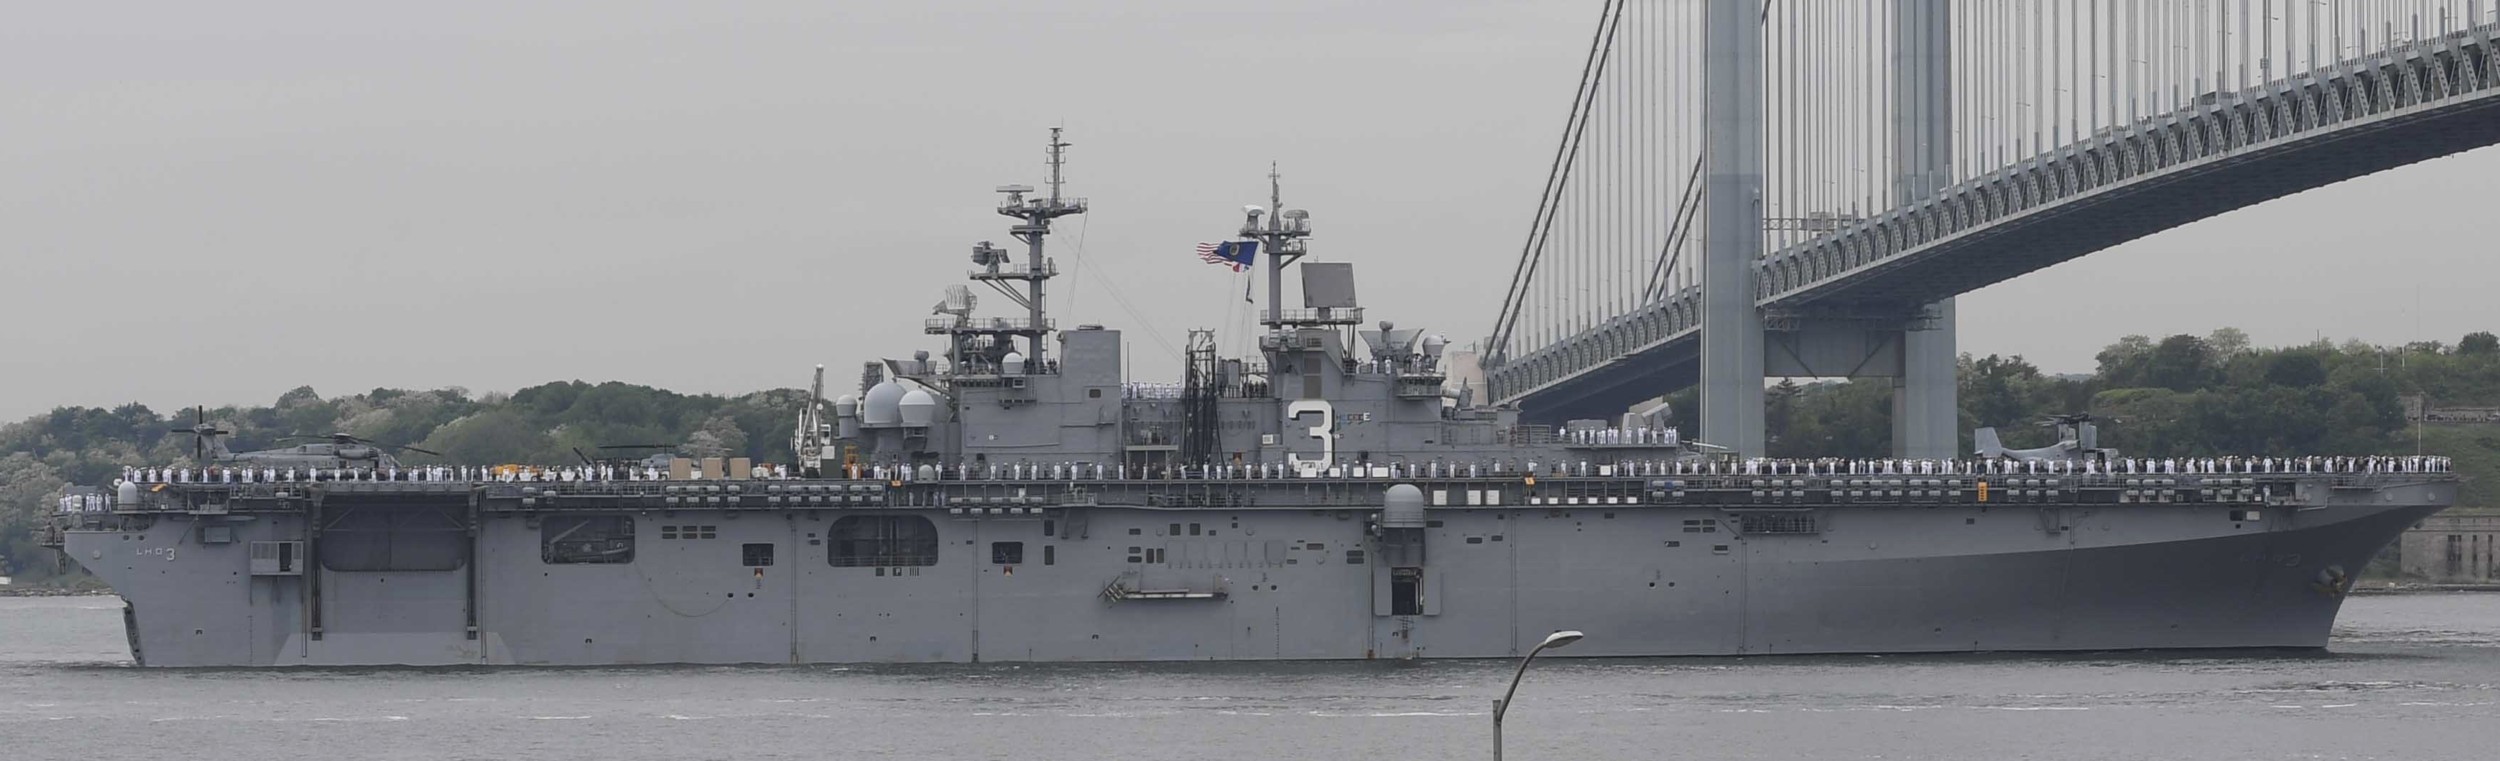 lhd-3 uss kearsarge wasp class amphibious assault ship landing dock us navy 170